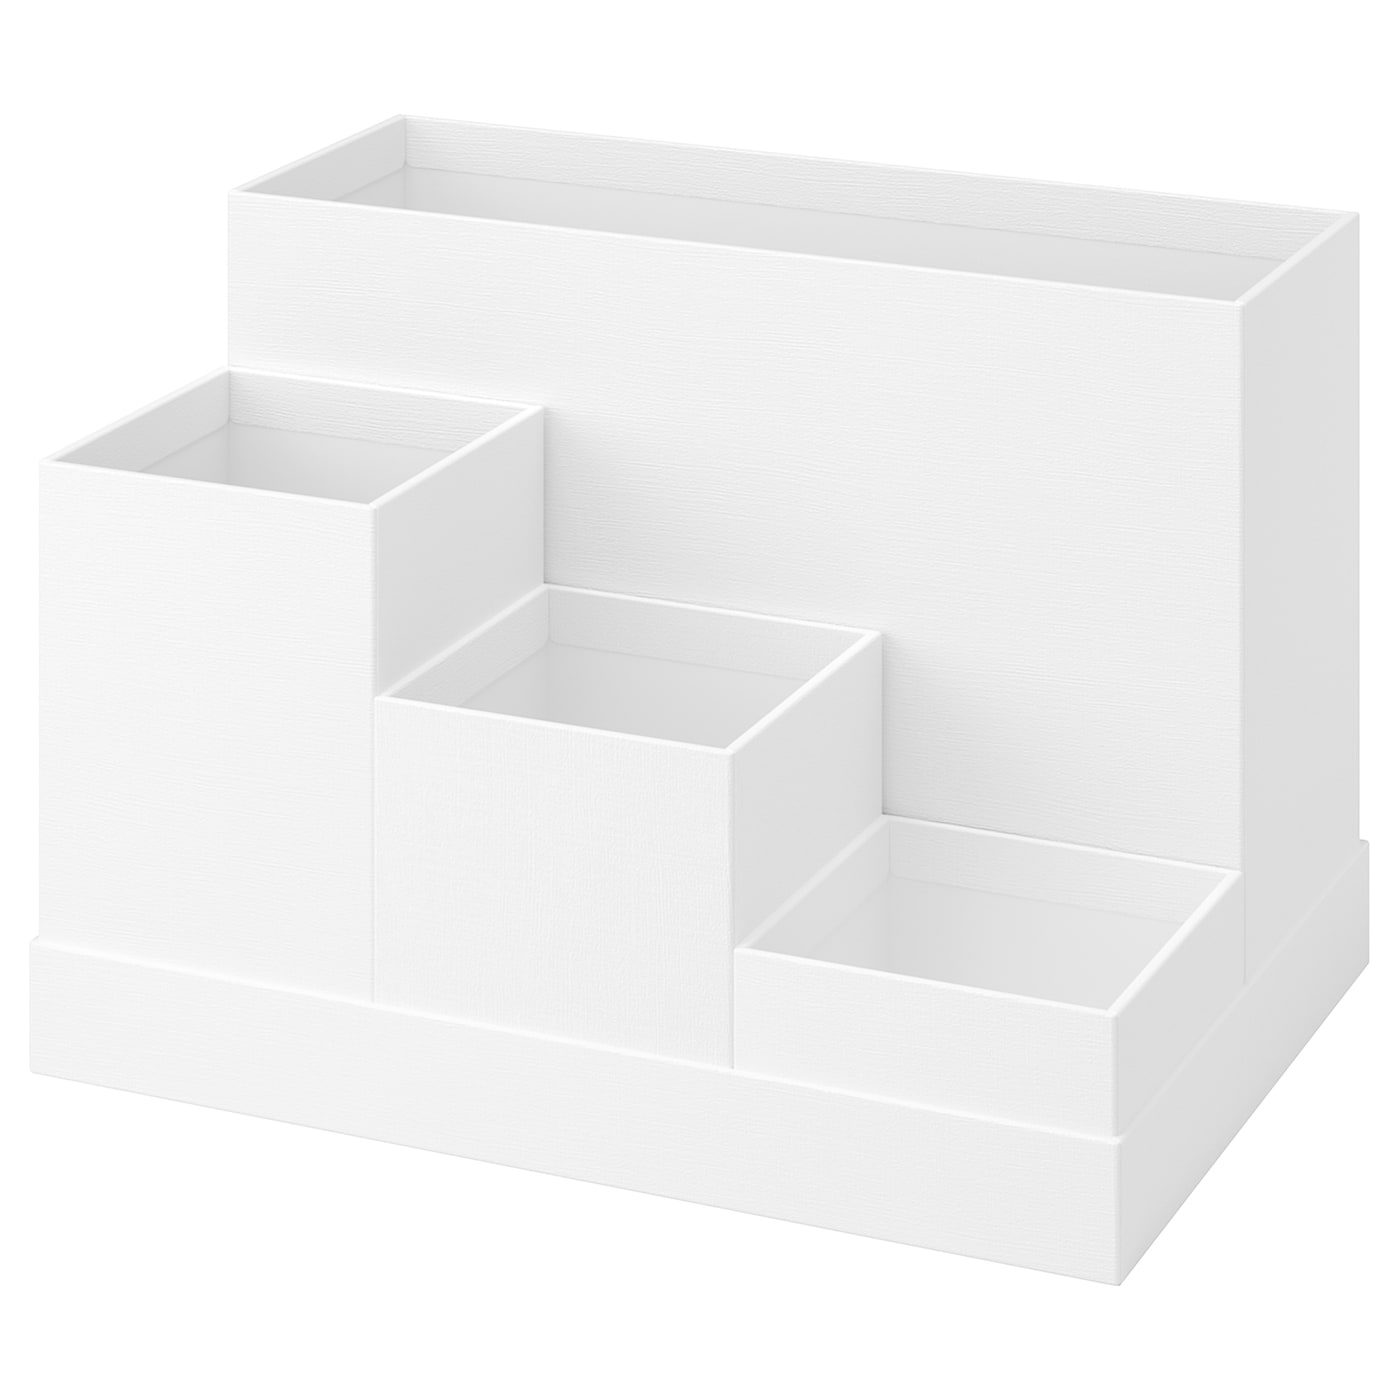 Настольный органайзер - TJENA IKEA/ ТЬЕНА ИКЕА, 18х17 см,  белый